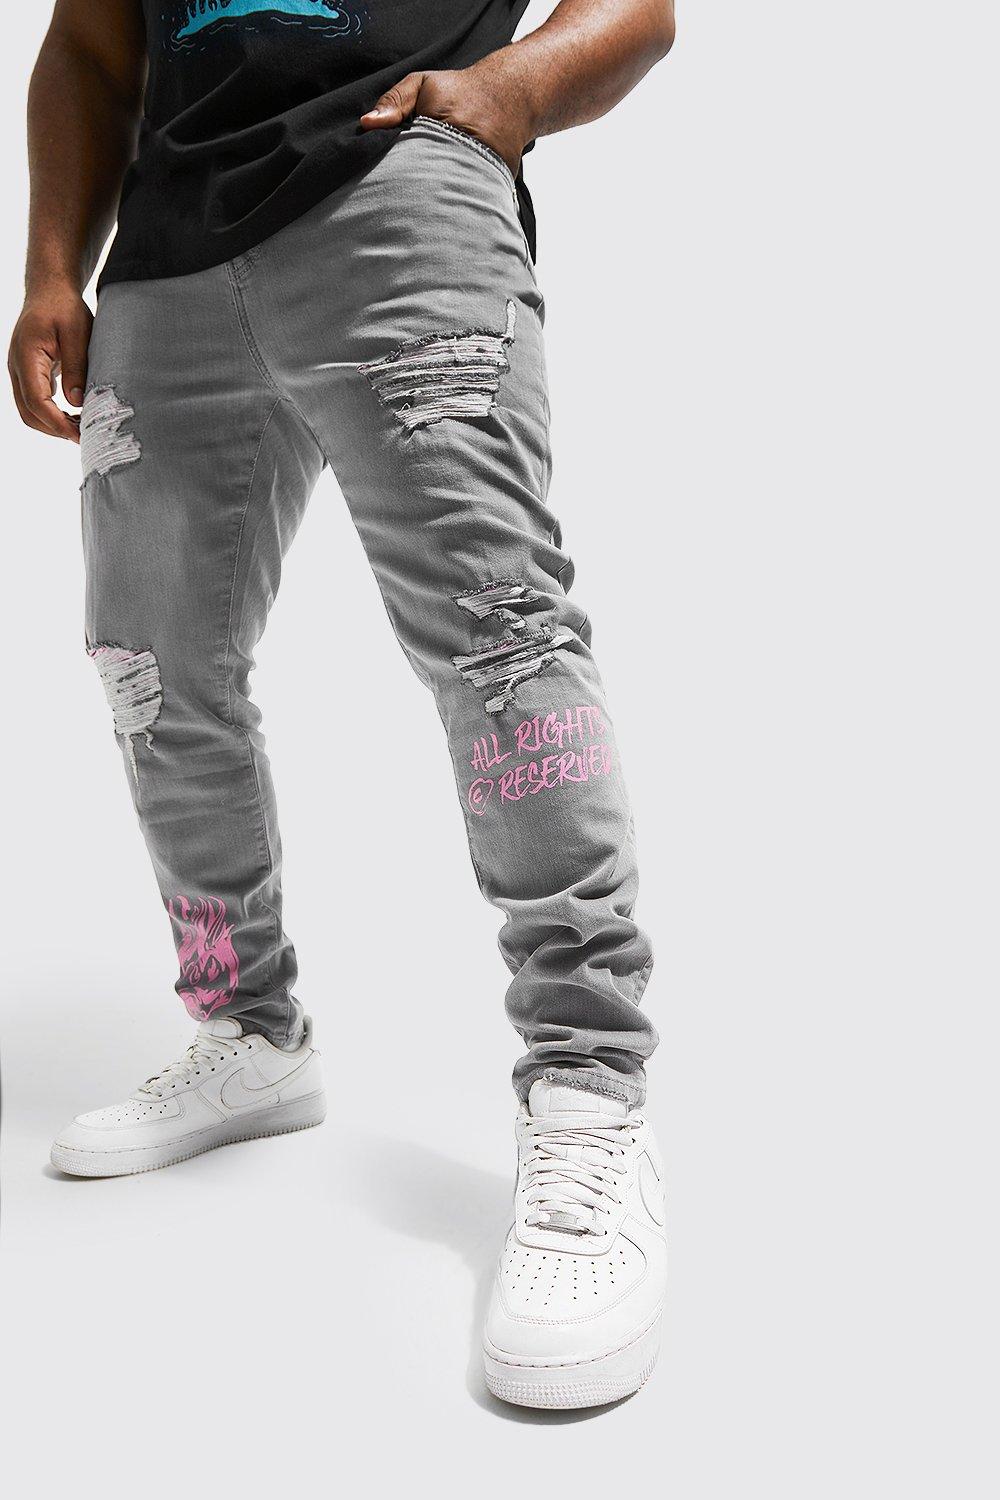 grande taille - jean skinny déchiré à imprimé bandana et graffiti homme - gris - 40, gris